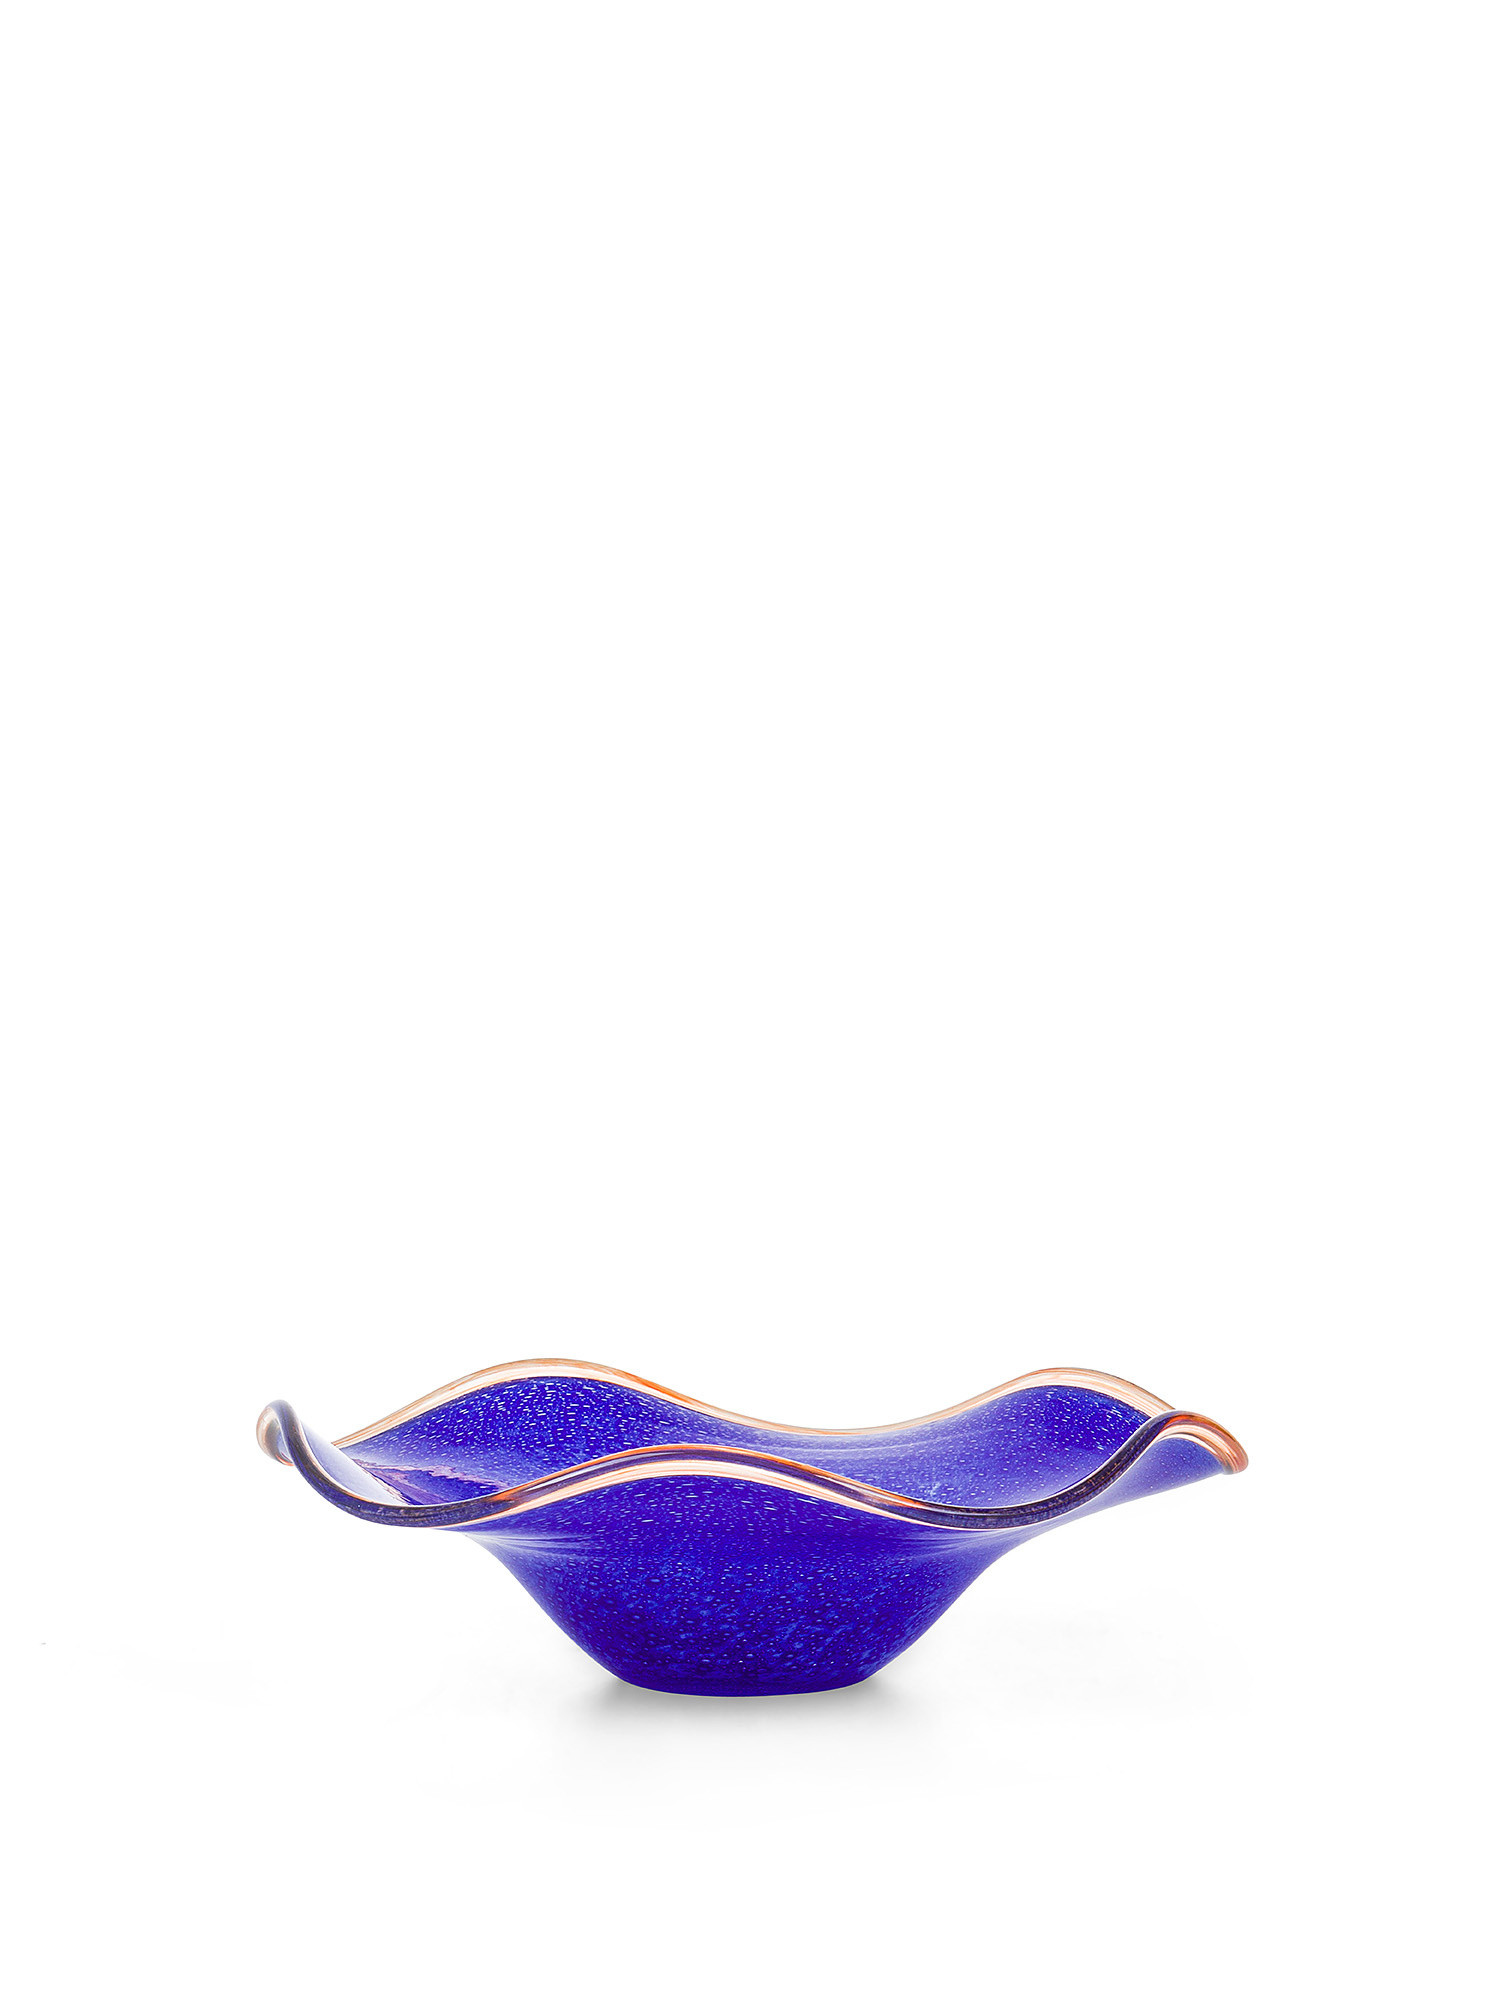 Piatto decorativo in vetro colorato in pasta con bordo a contrasto, Blu, large image number 0